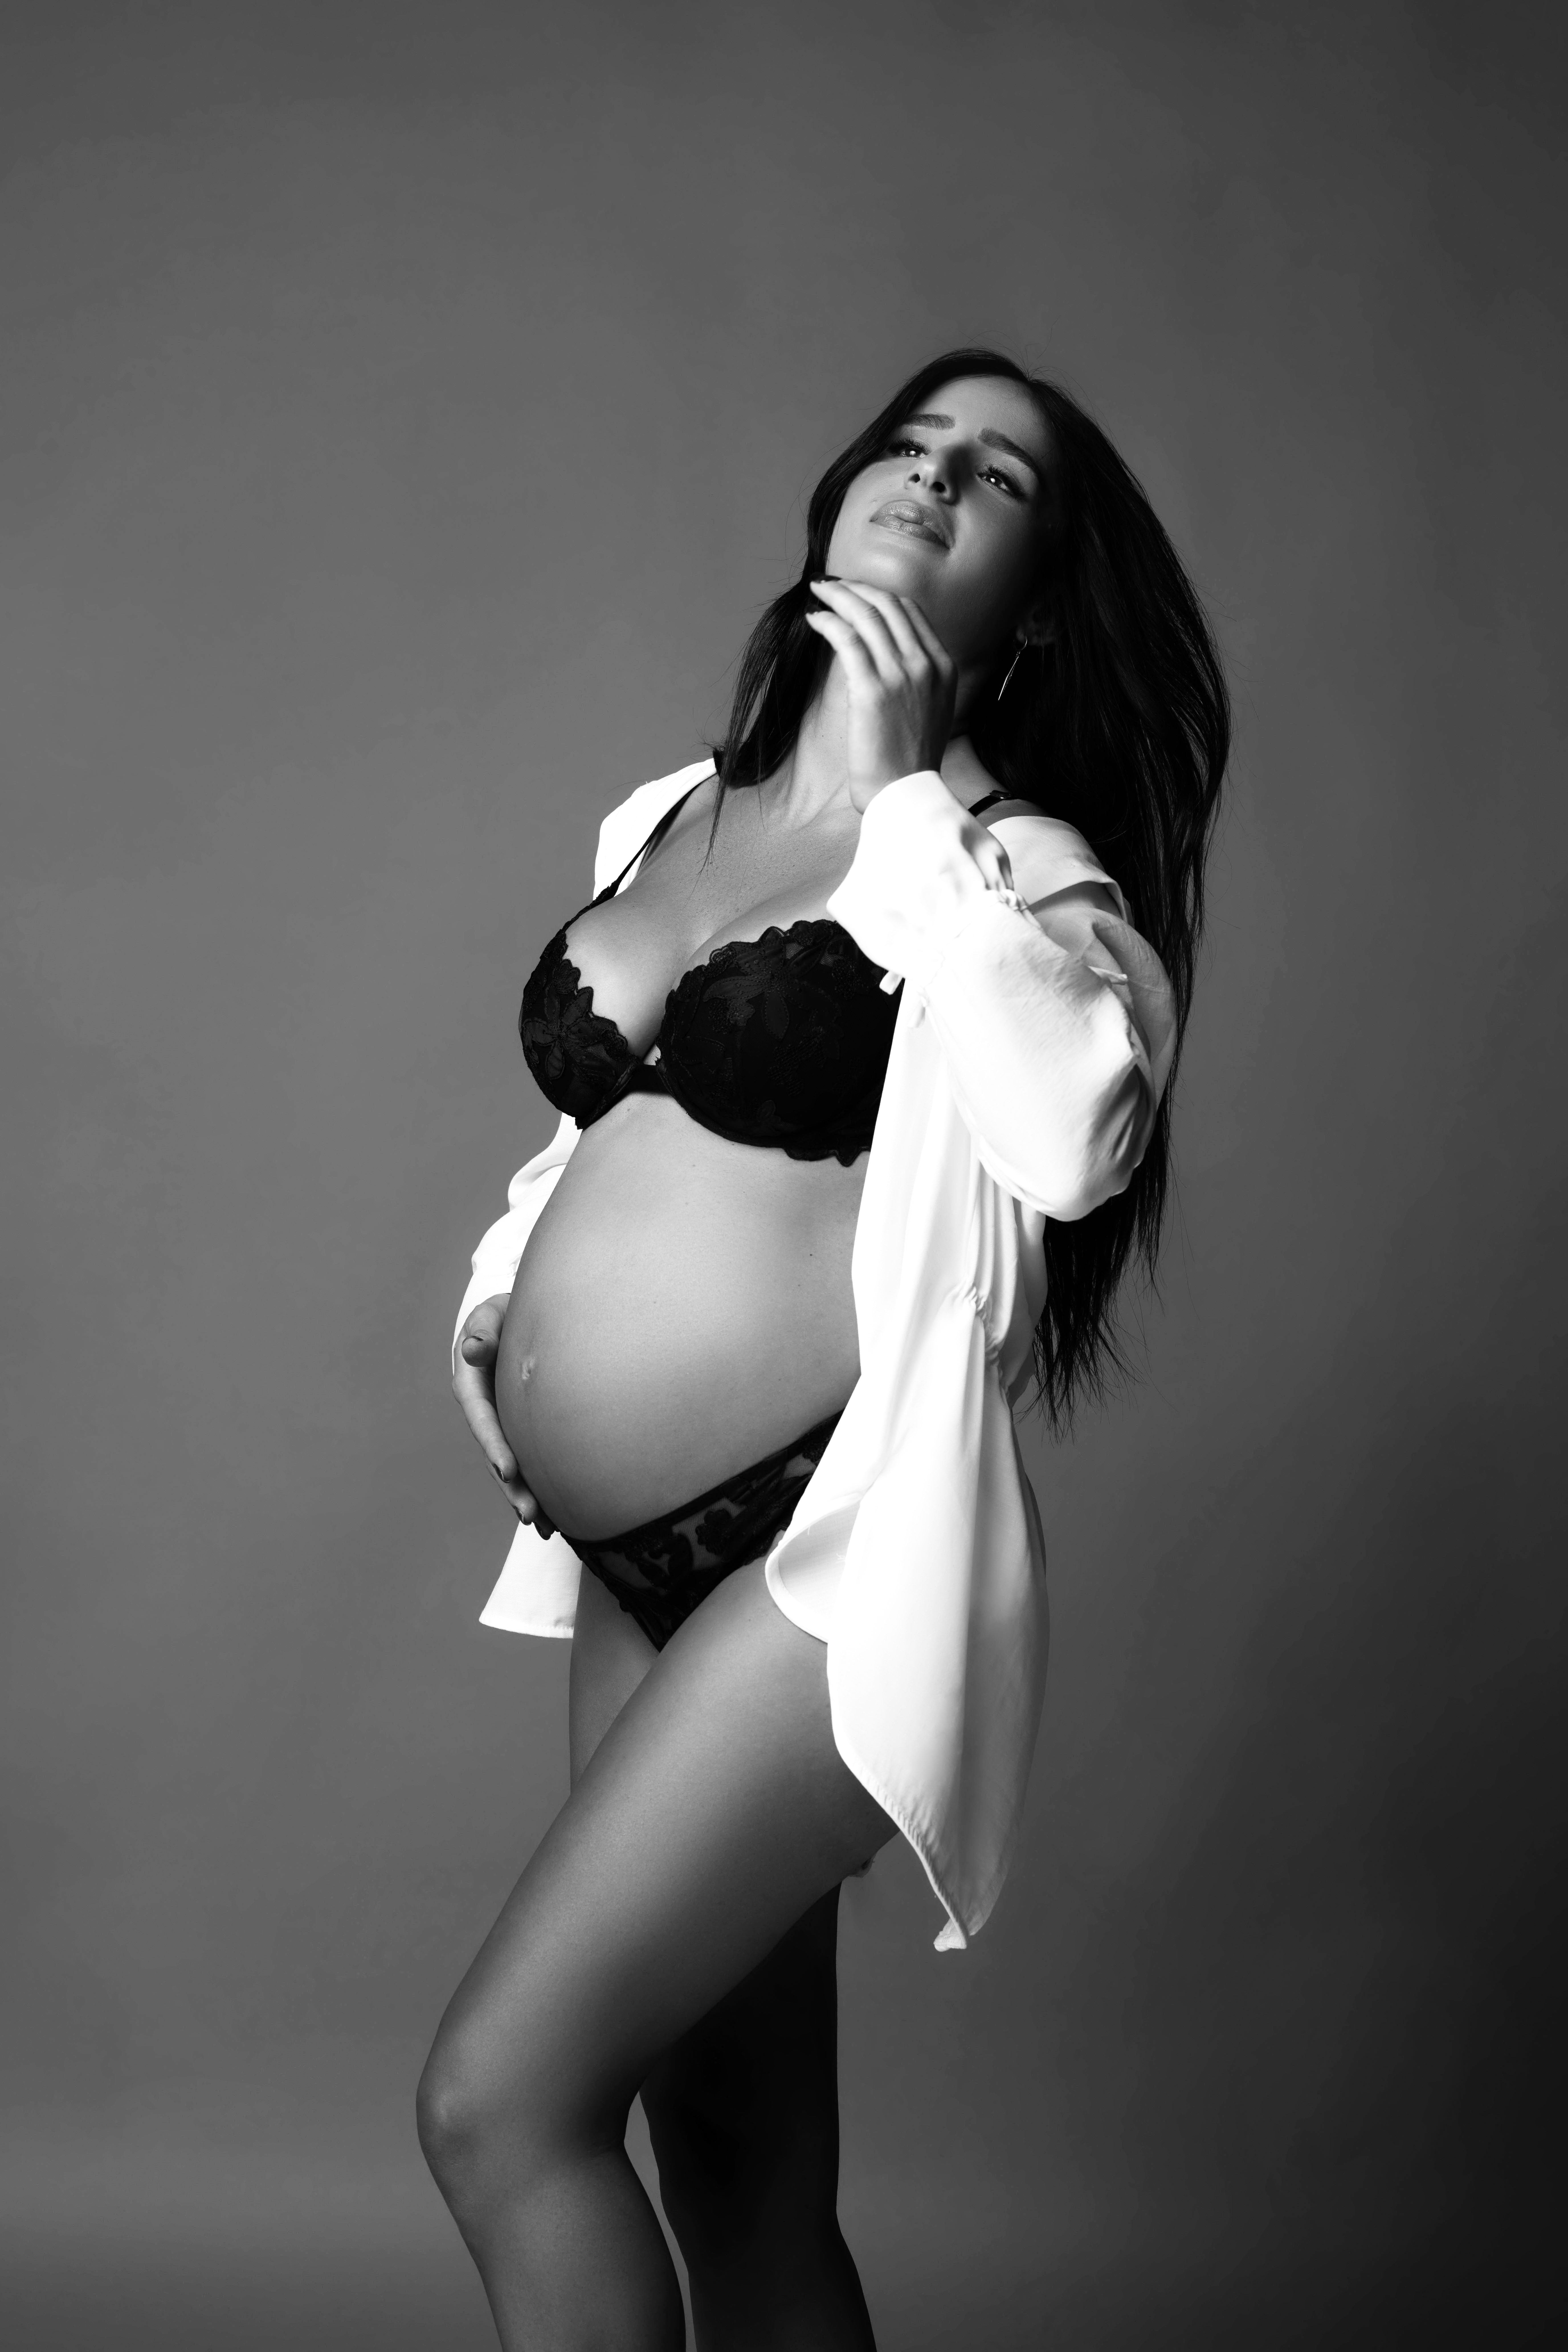 Pregnant woman in black bikini wearing open white button-down shirt